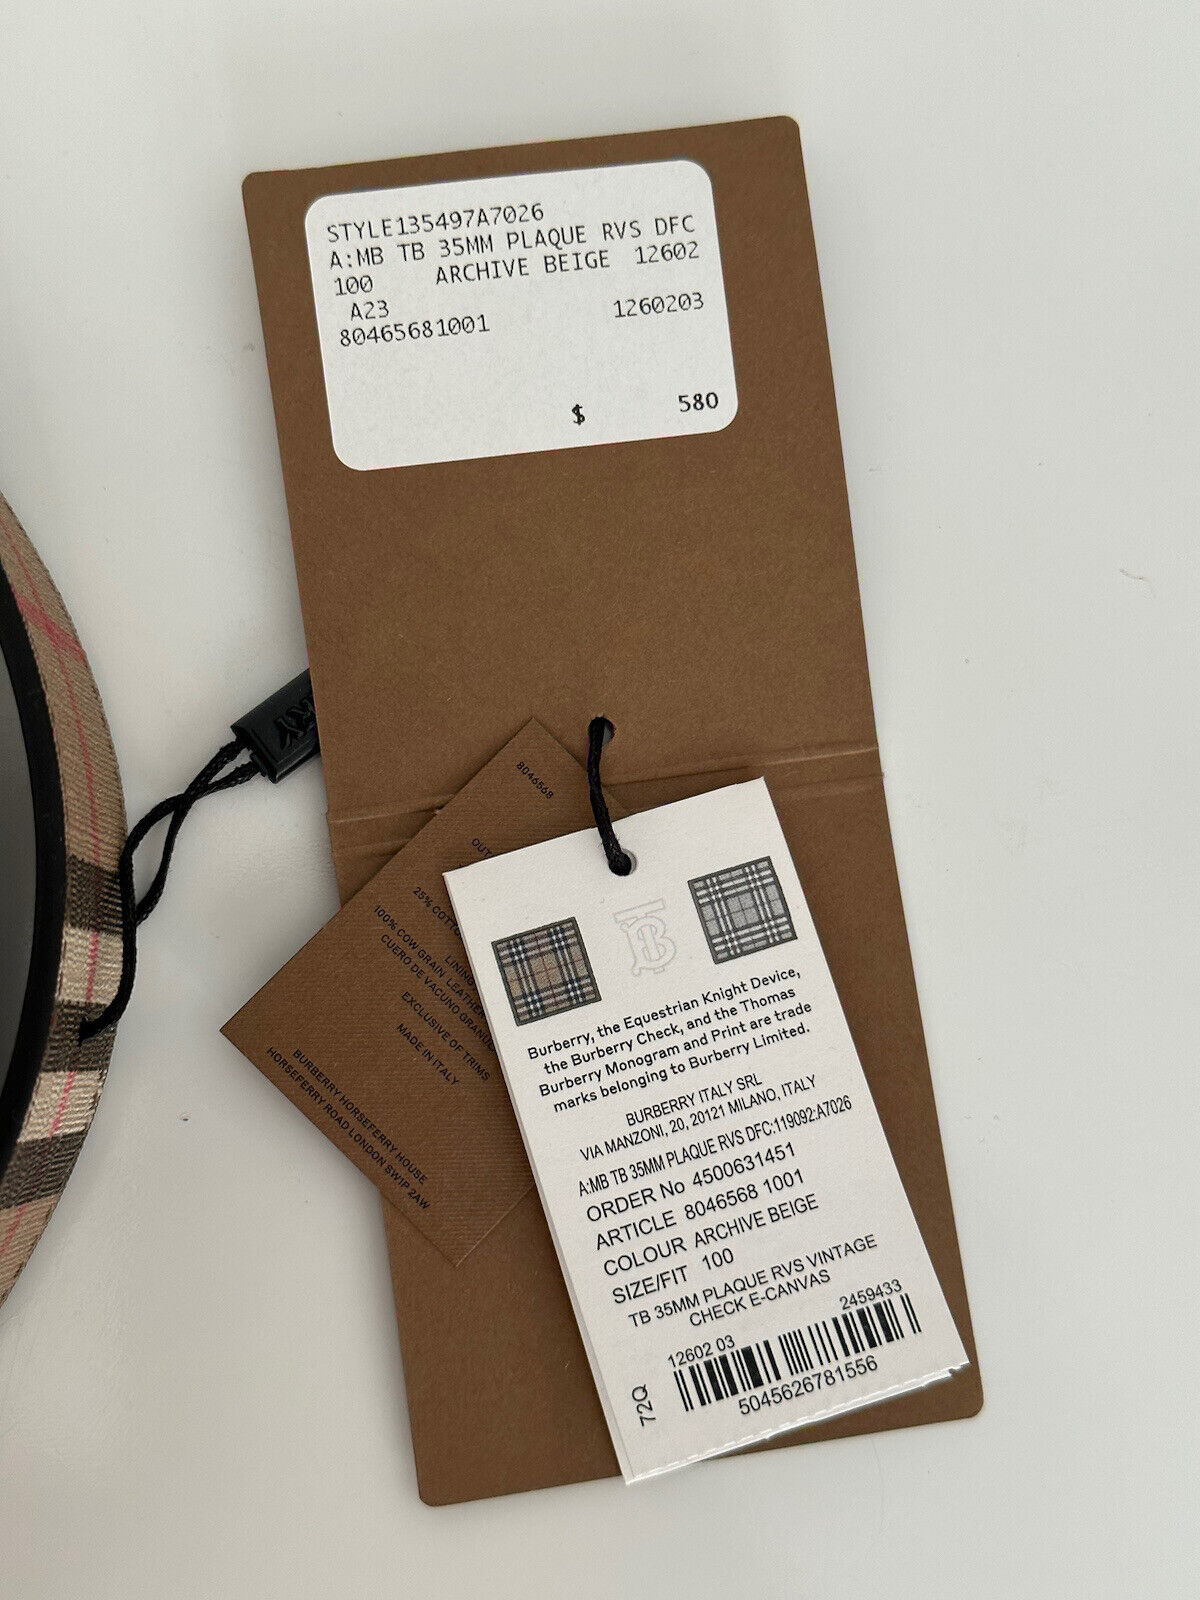 Neu mit Etikett: 580 $ Burberry TB Leather Archive Beige Wendegürtel 40/100 8046568 Italien 